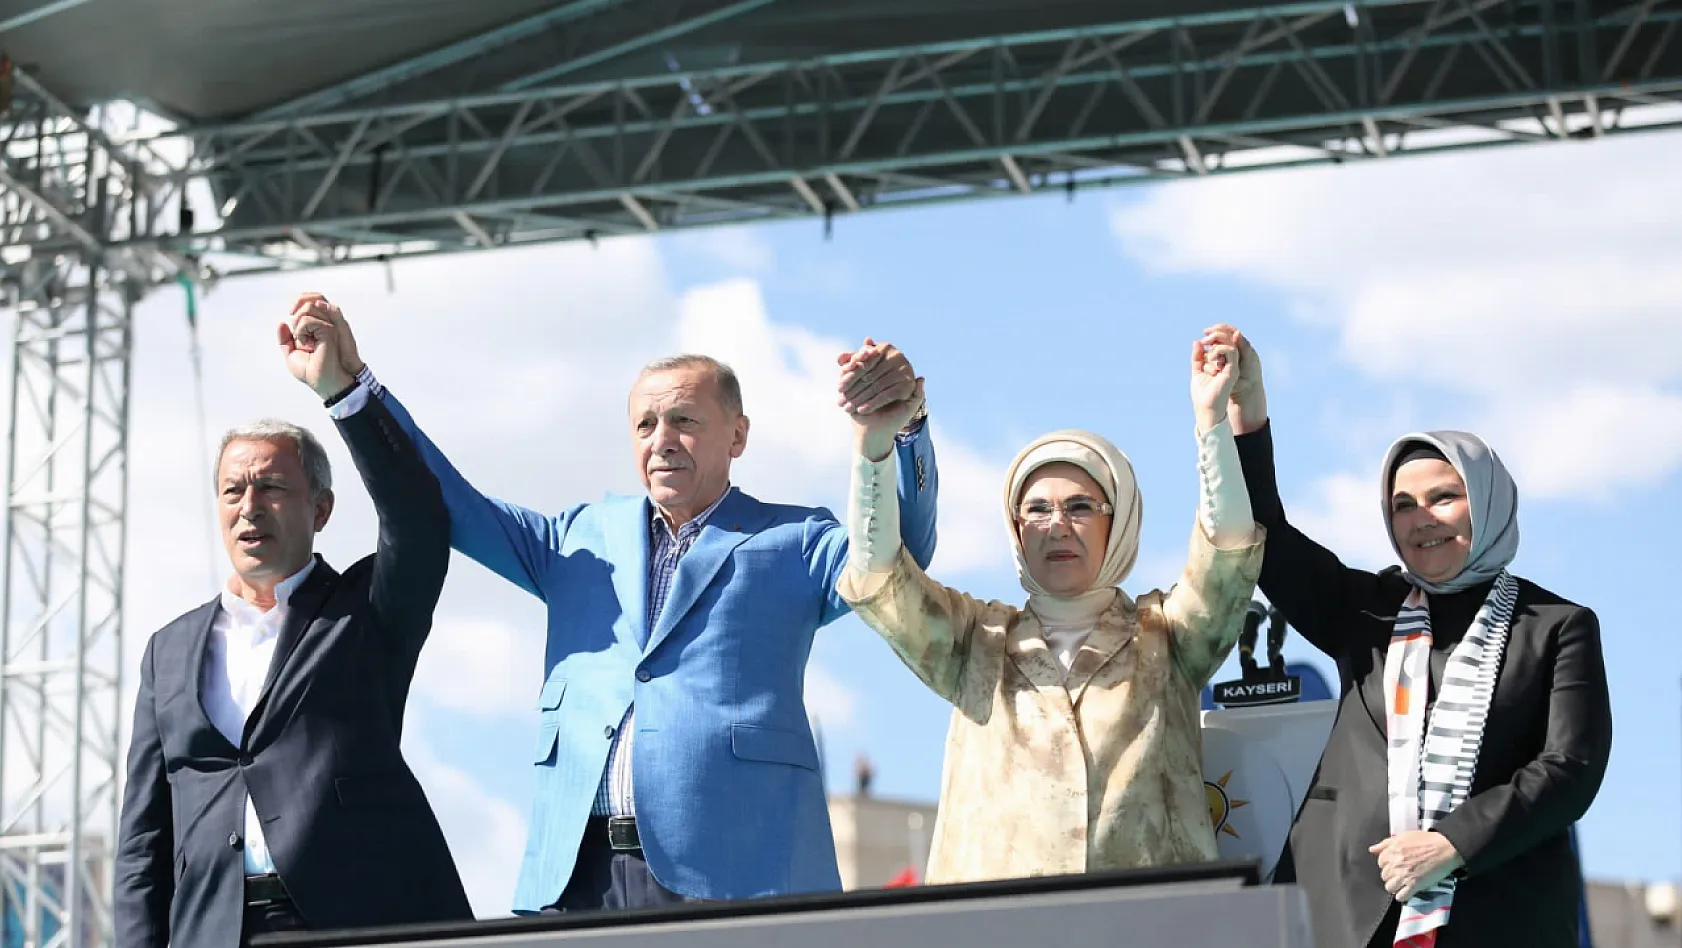 AK Parti Kayseri Milletvekili seçim çalışmalarına ara verdiğini duyurdu!